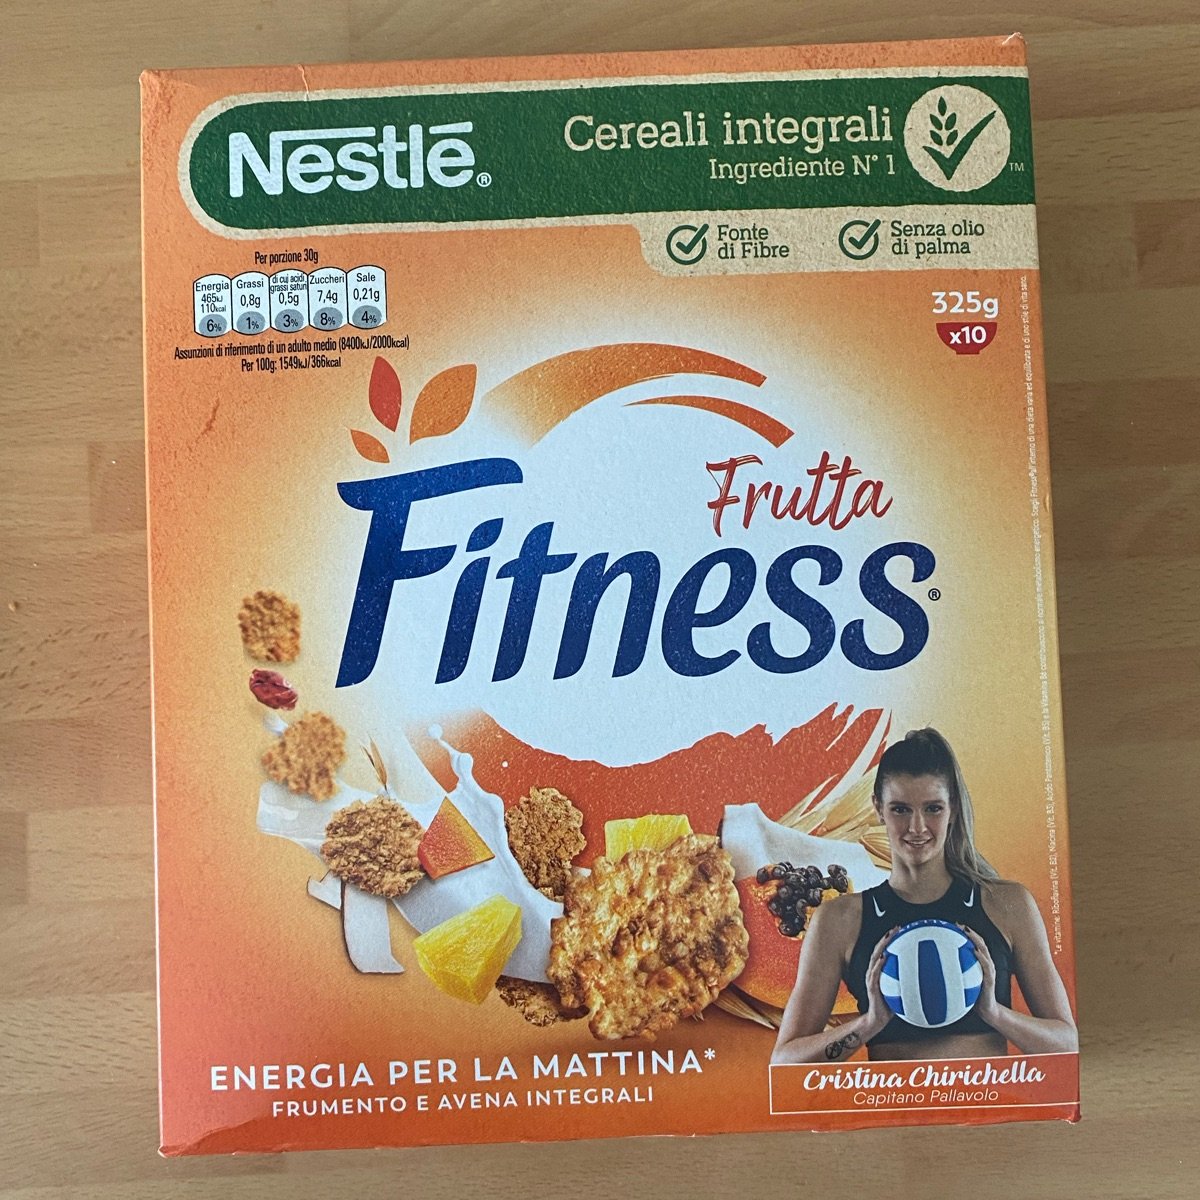 Copra Fitness Cereali integrali Frutta Reviews